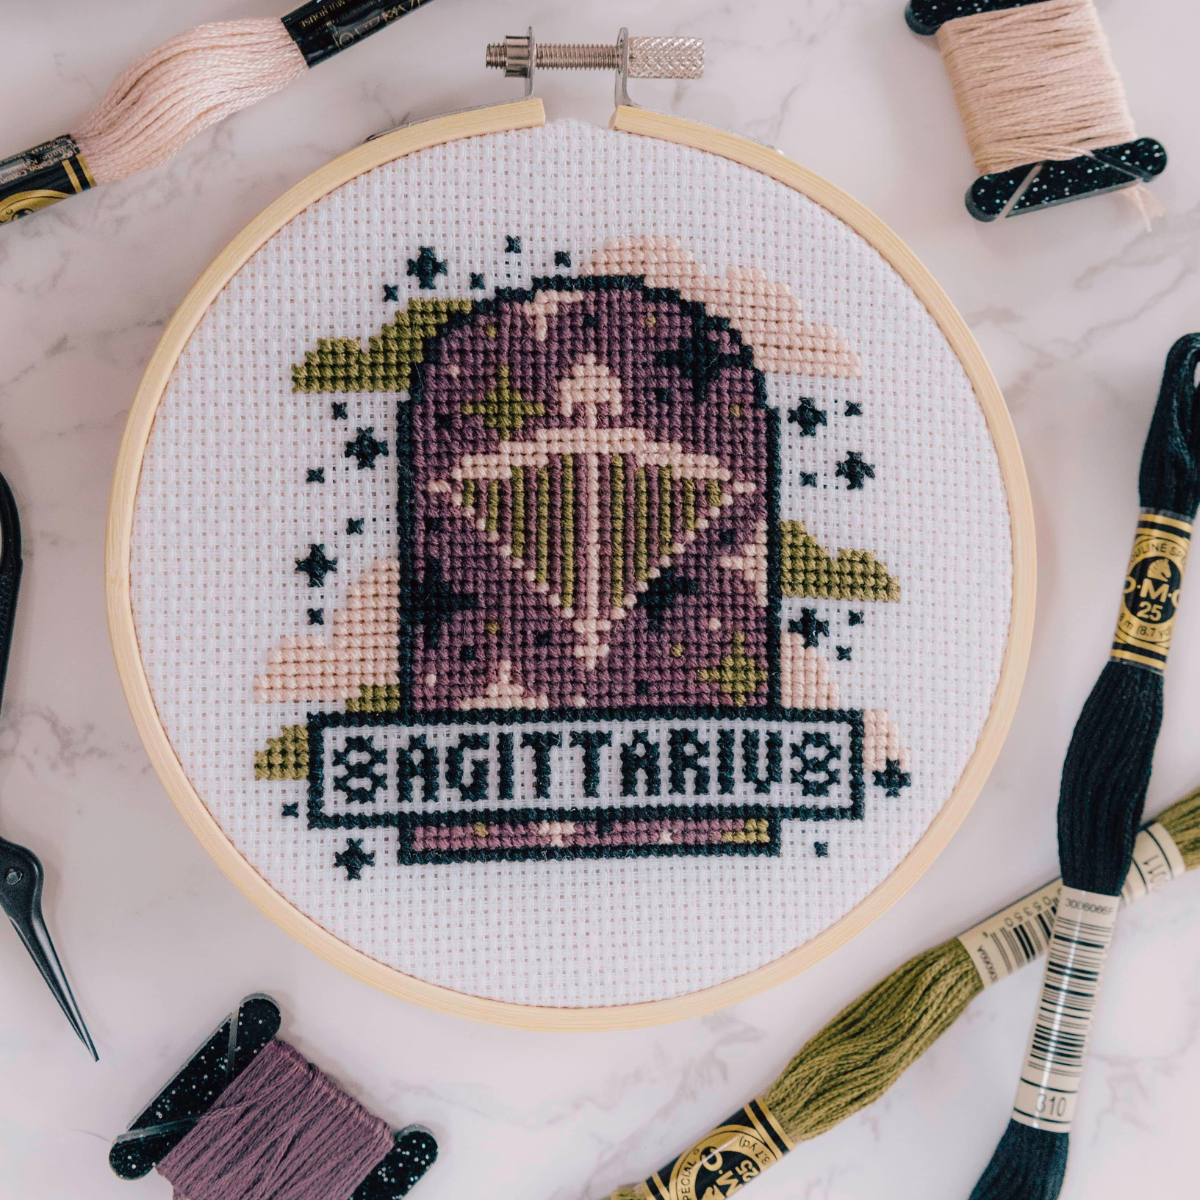 'Sagittarius' Zodiac Star Sign Cross Stitch Kit